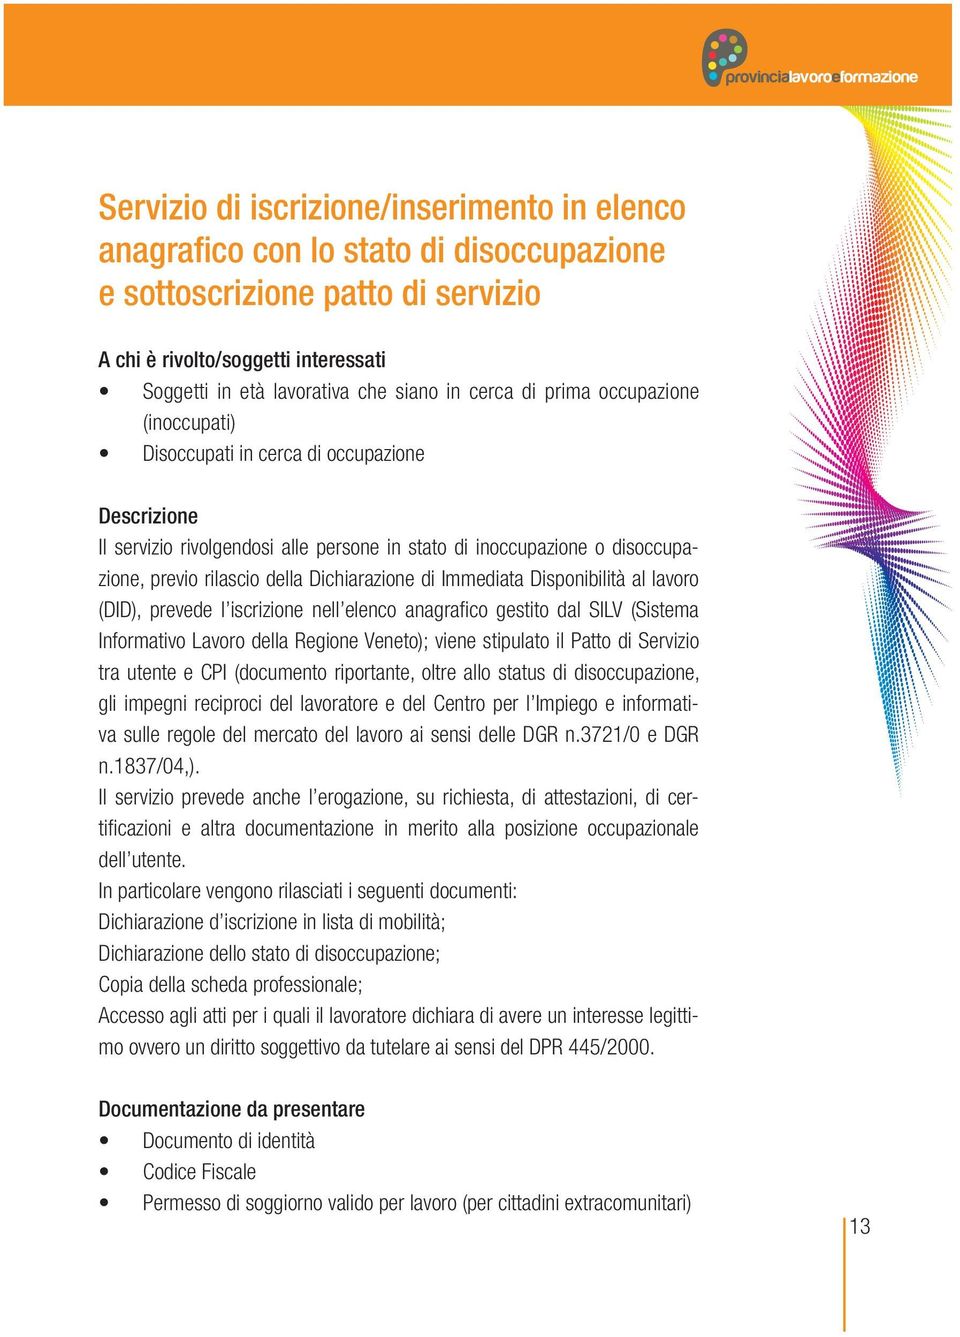 previo rilascio della Dichiarazione di Immediata Disponibilità al lavoro (DID), prevede l iscrizione nell elenco anagrafico gestito dal SILV (Sistema Informativo Lavoro della Regione Veneto); viene